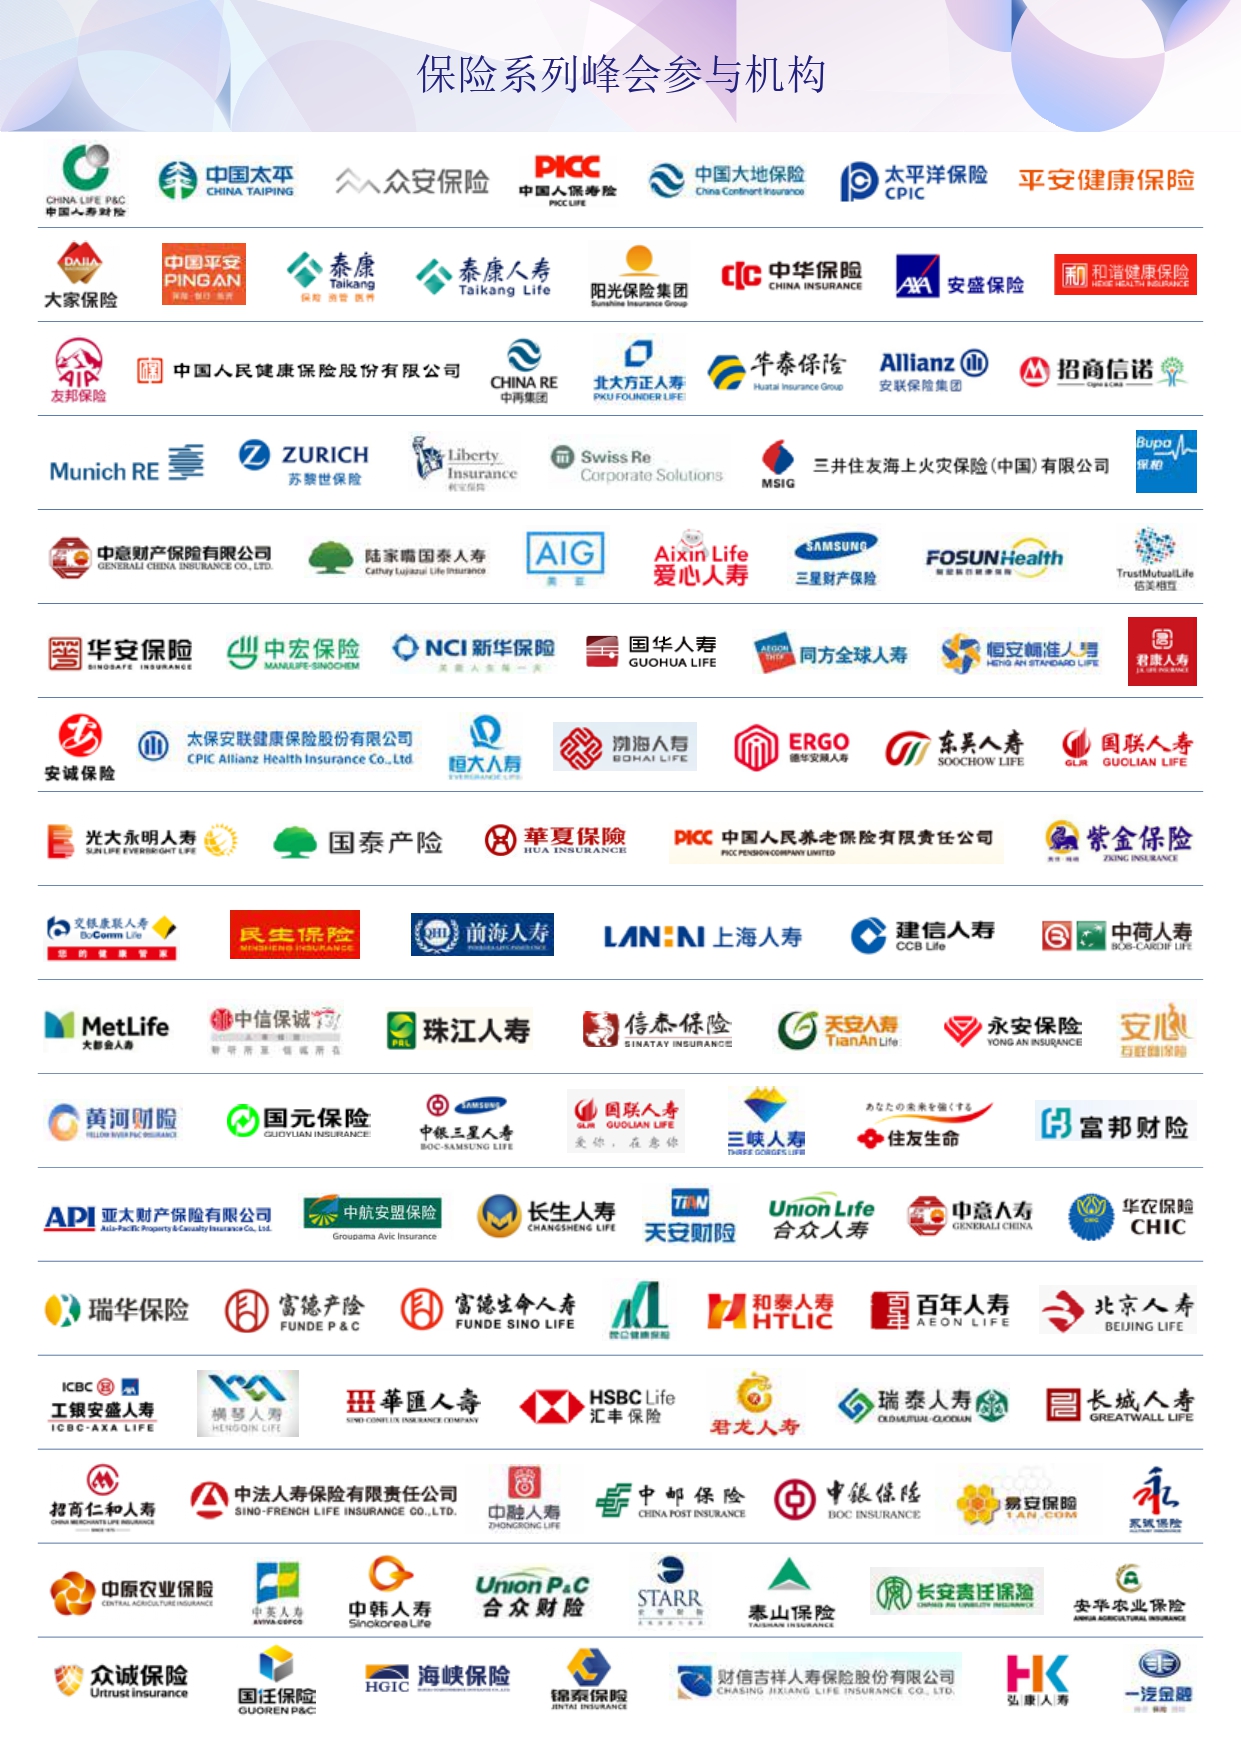 2024第十二届中国保险产业国际峰会